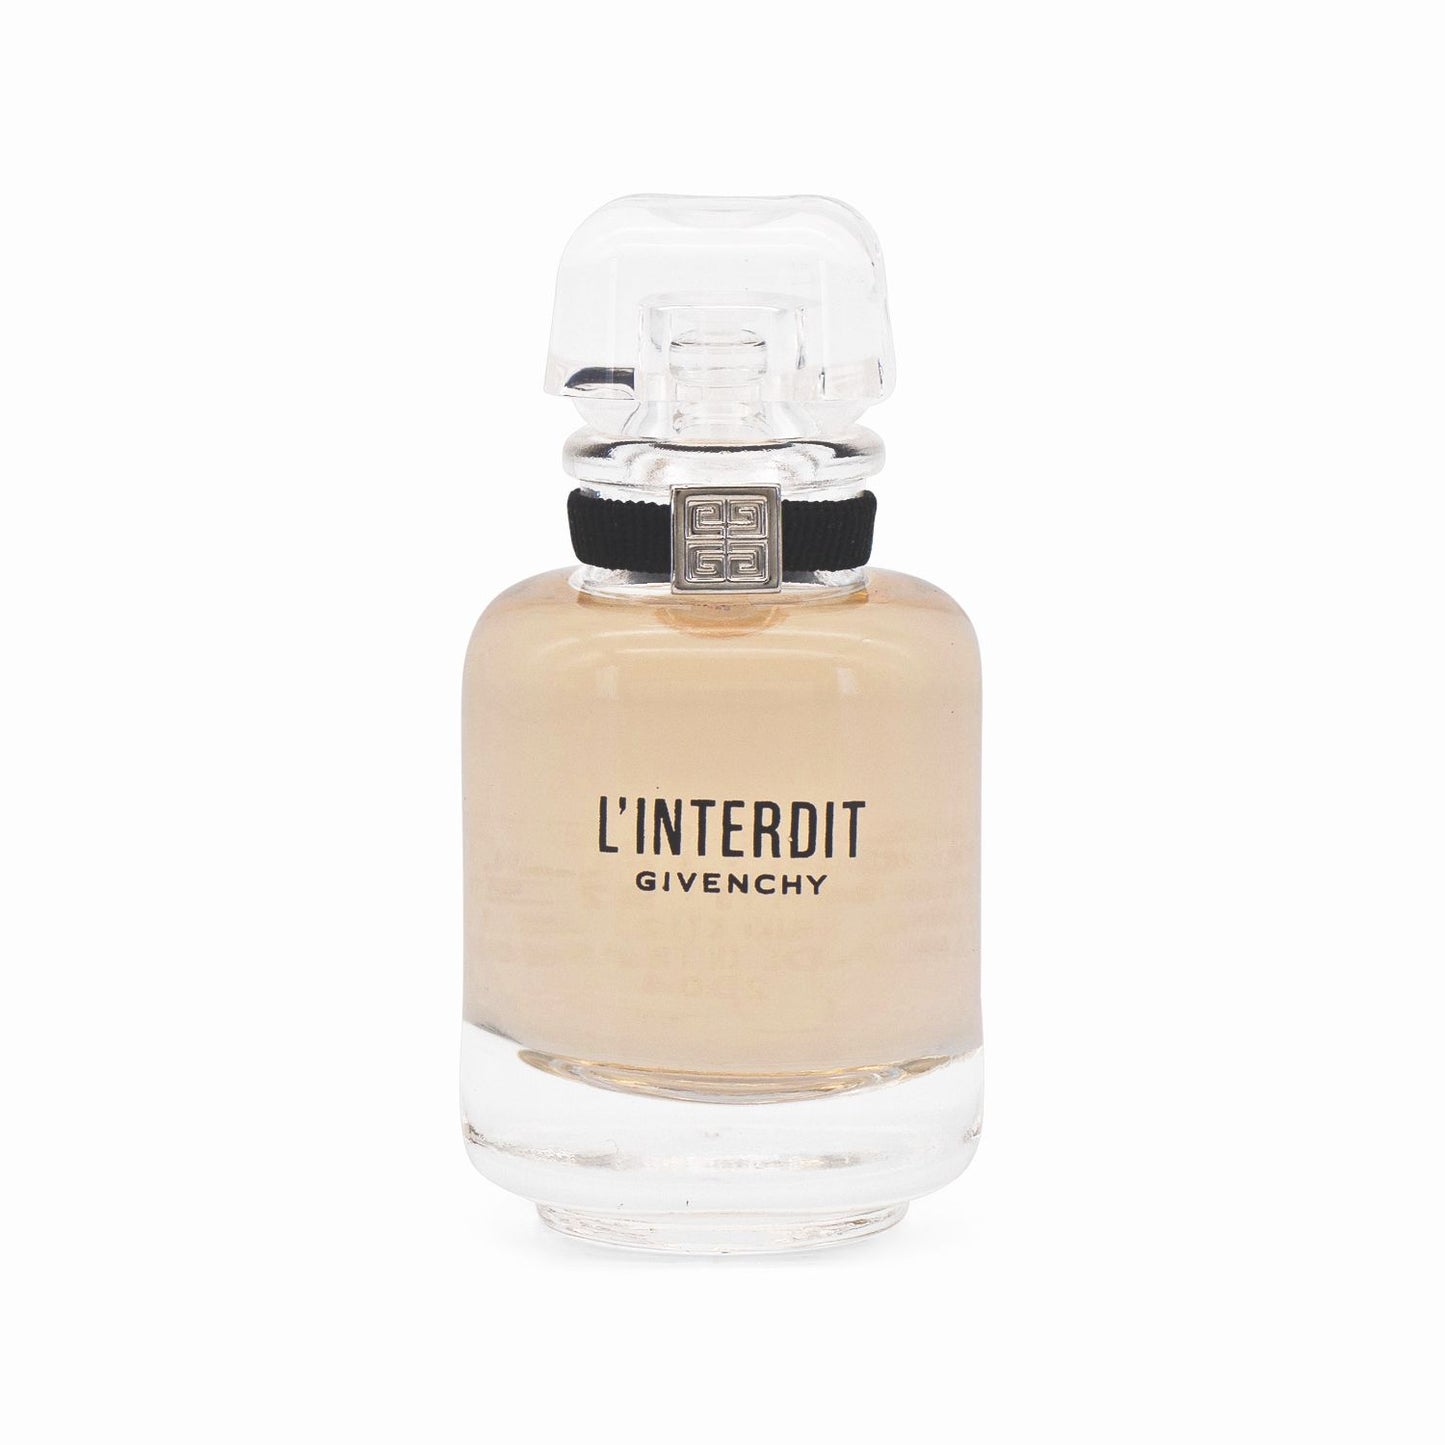 Givenchy L'Interdit Eau de Toilette Mini 10ml - Imperfect Box